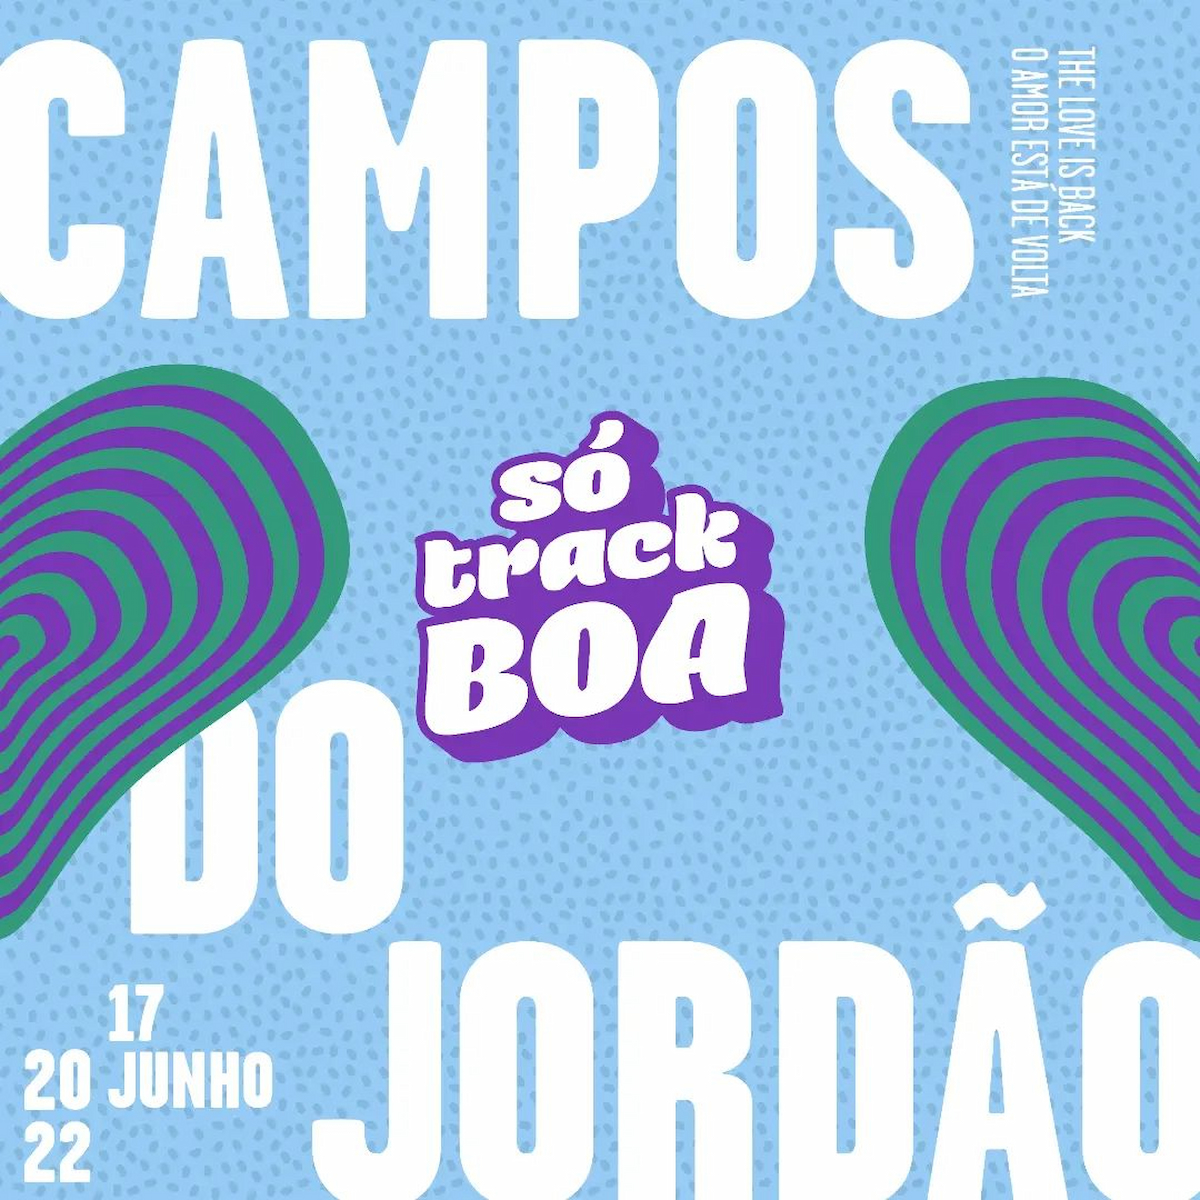 Só Track Boa Campos do Jordão 2022 divulga line up completo!